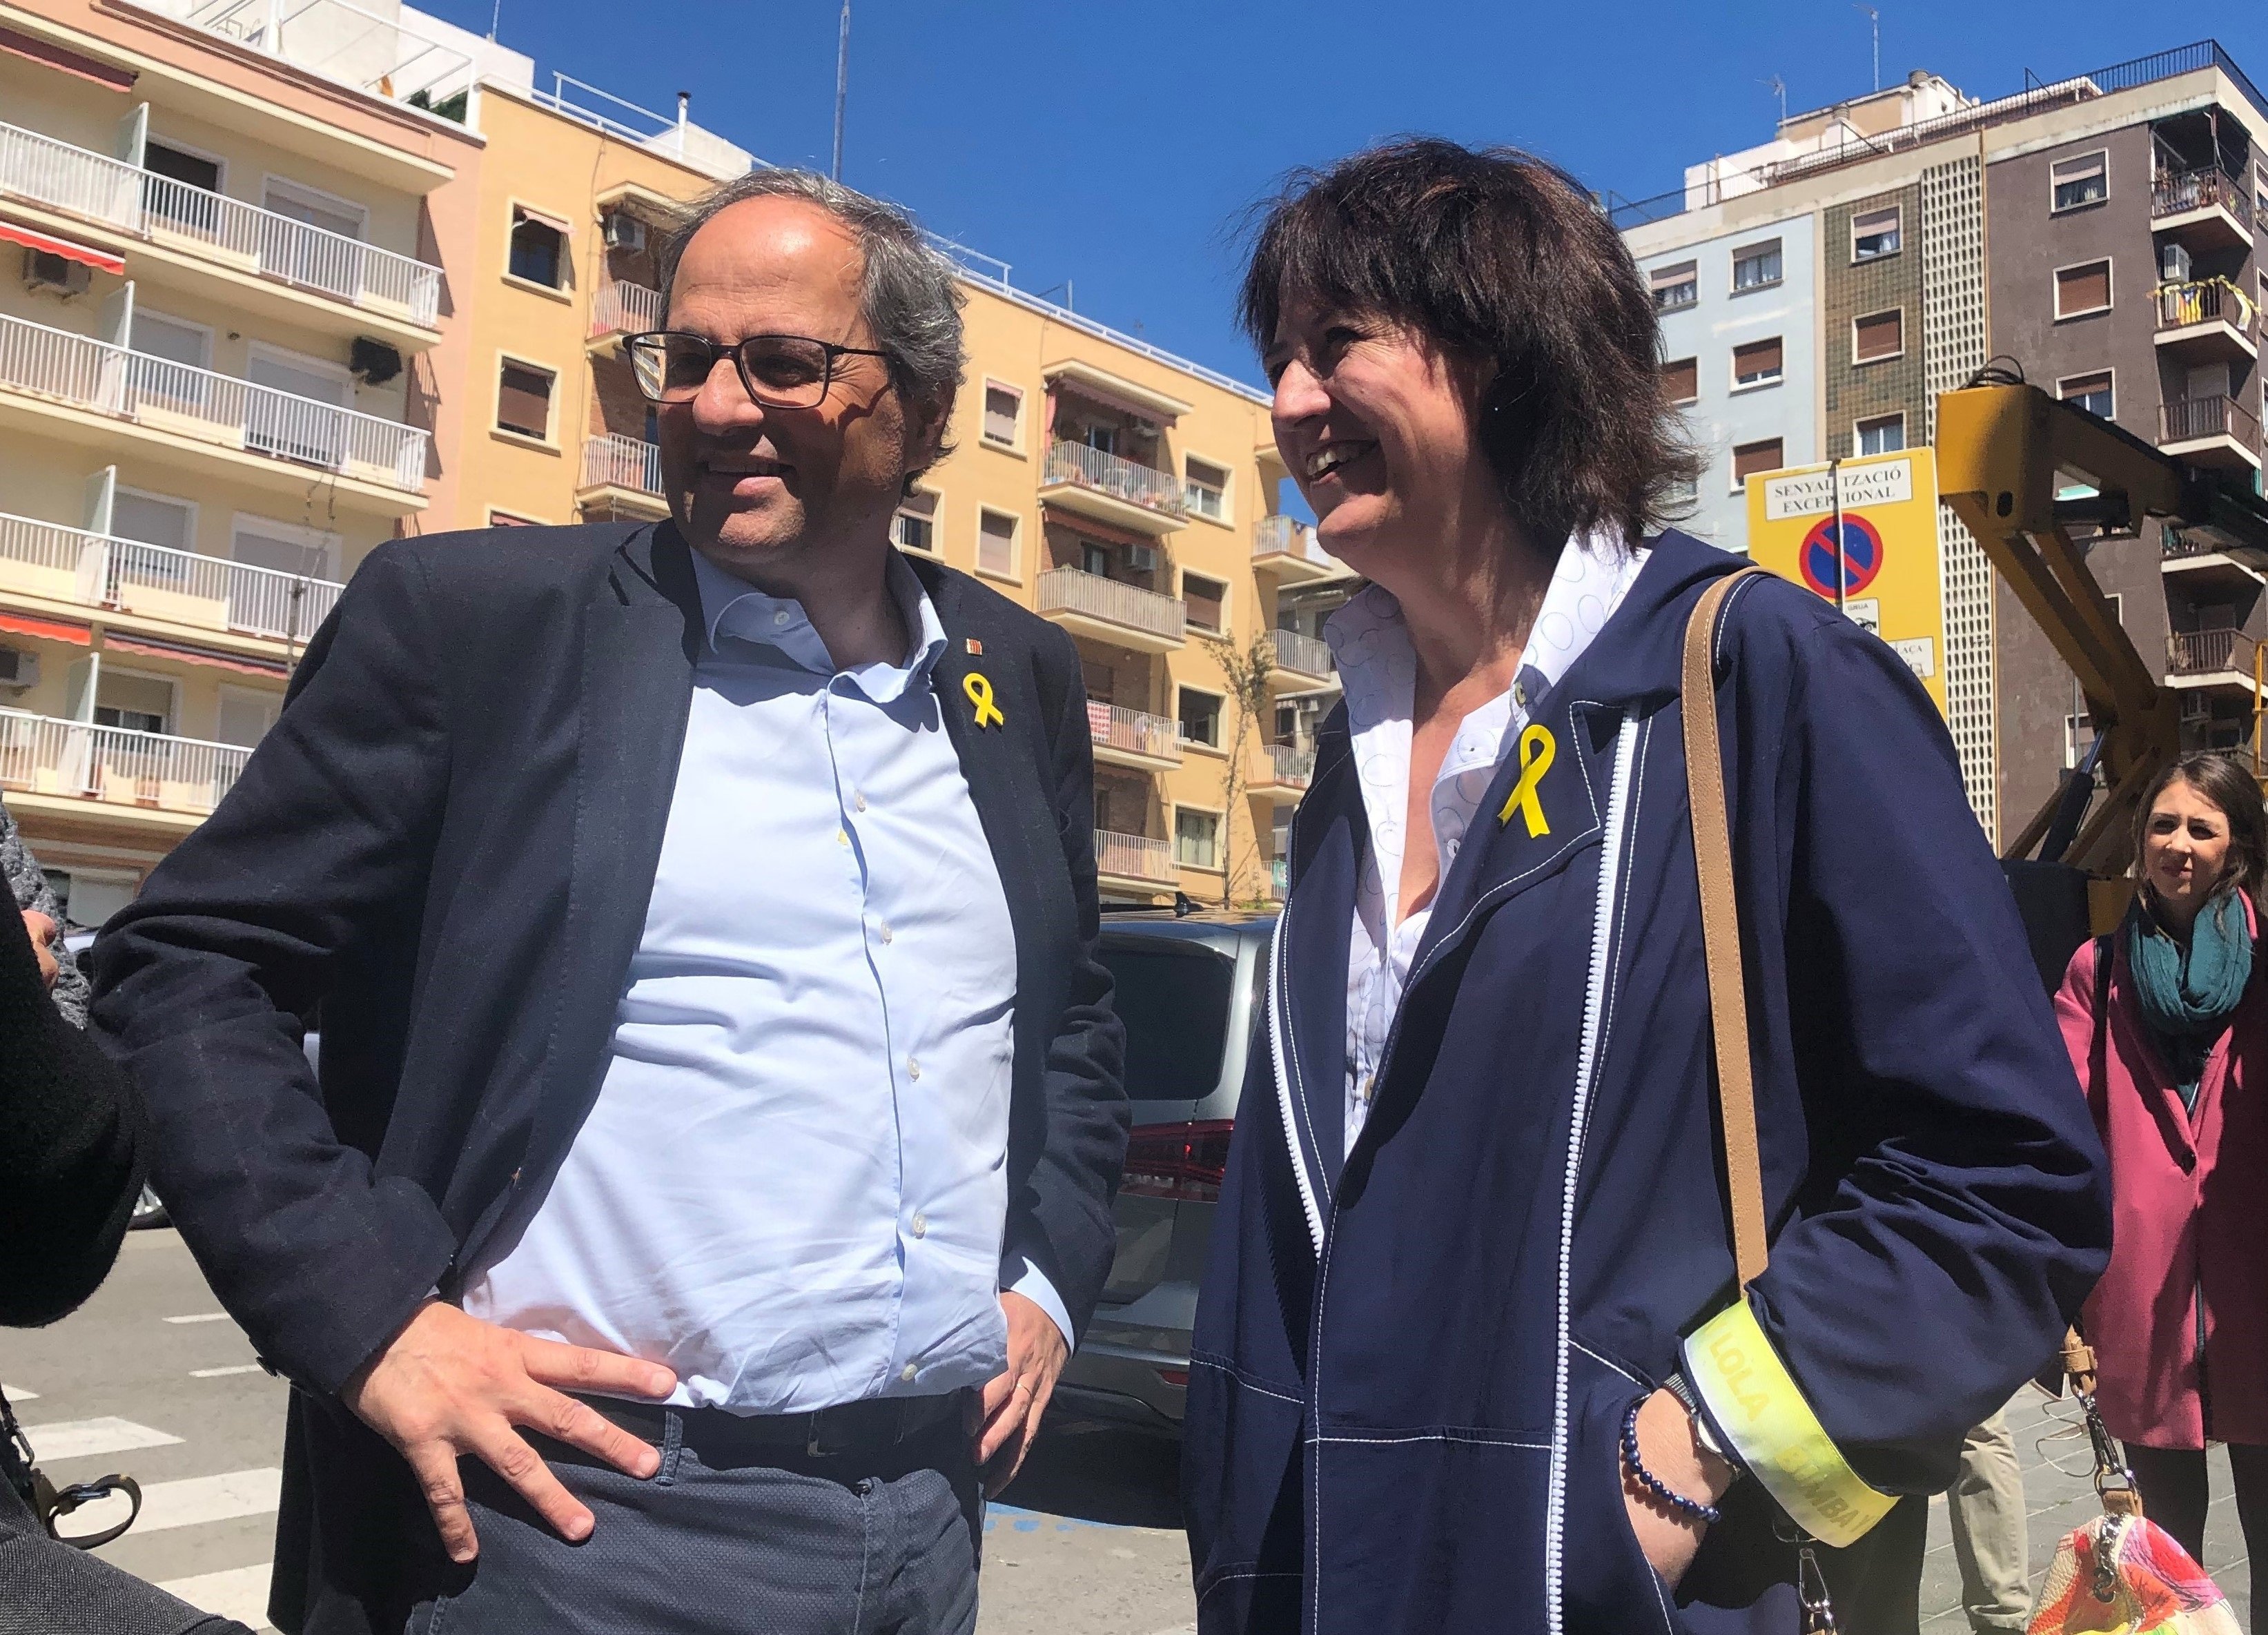 Torra felicita Puigdemont per la resolució del TS: "Ha tornat a guanyar"